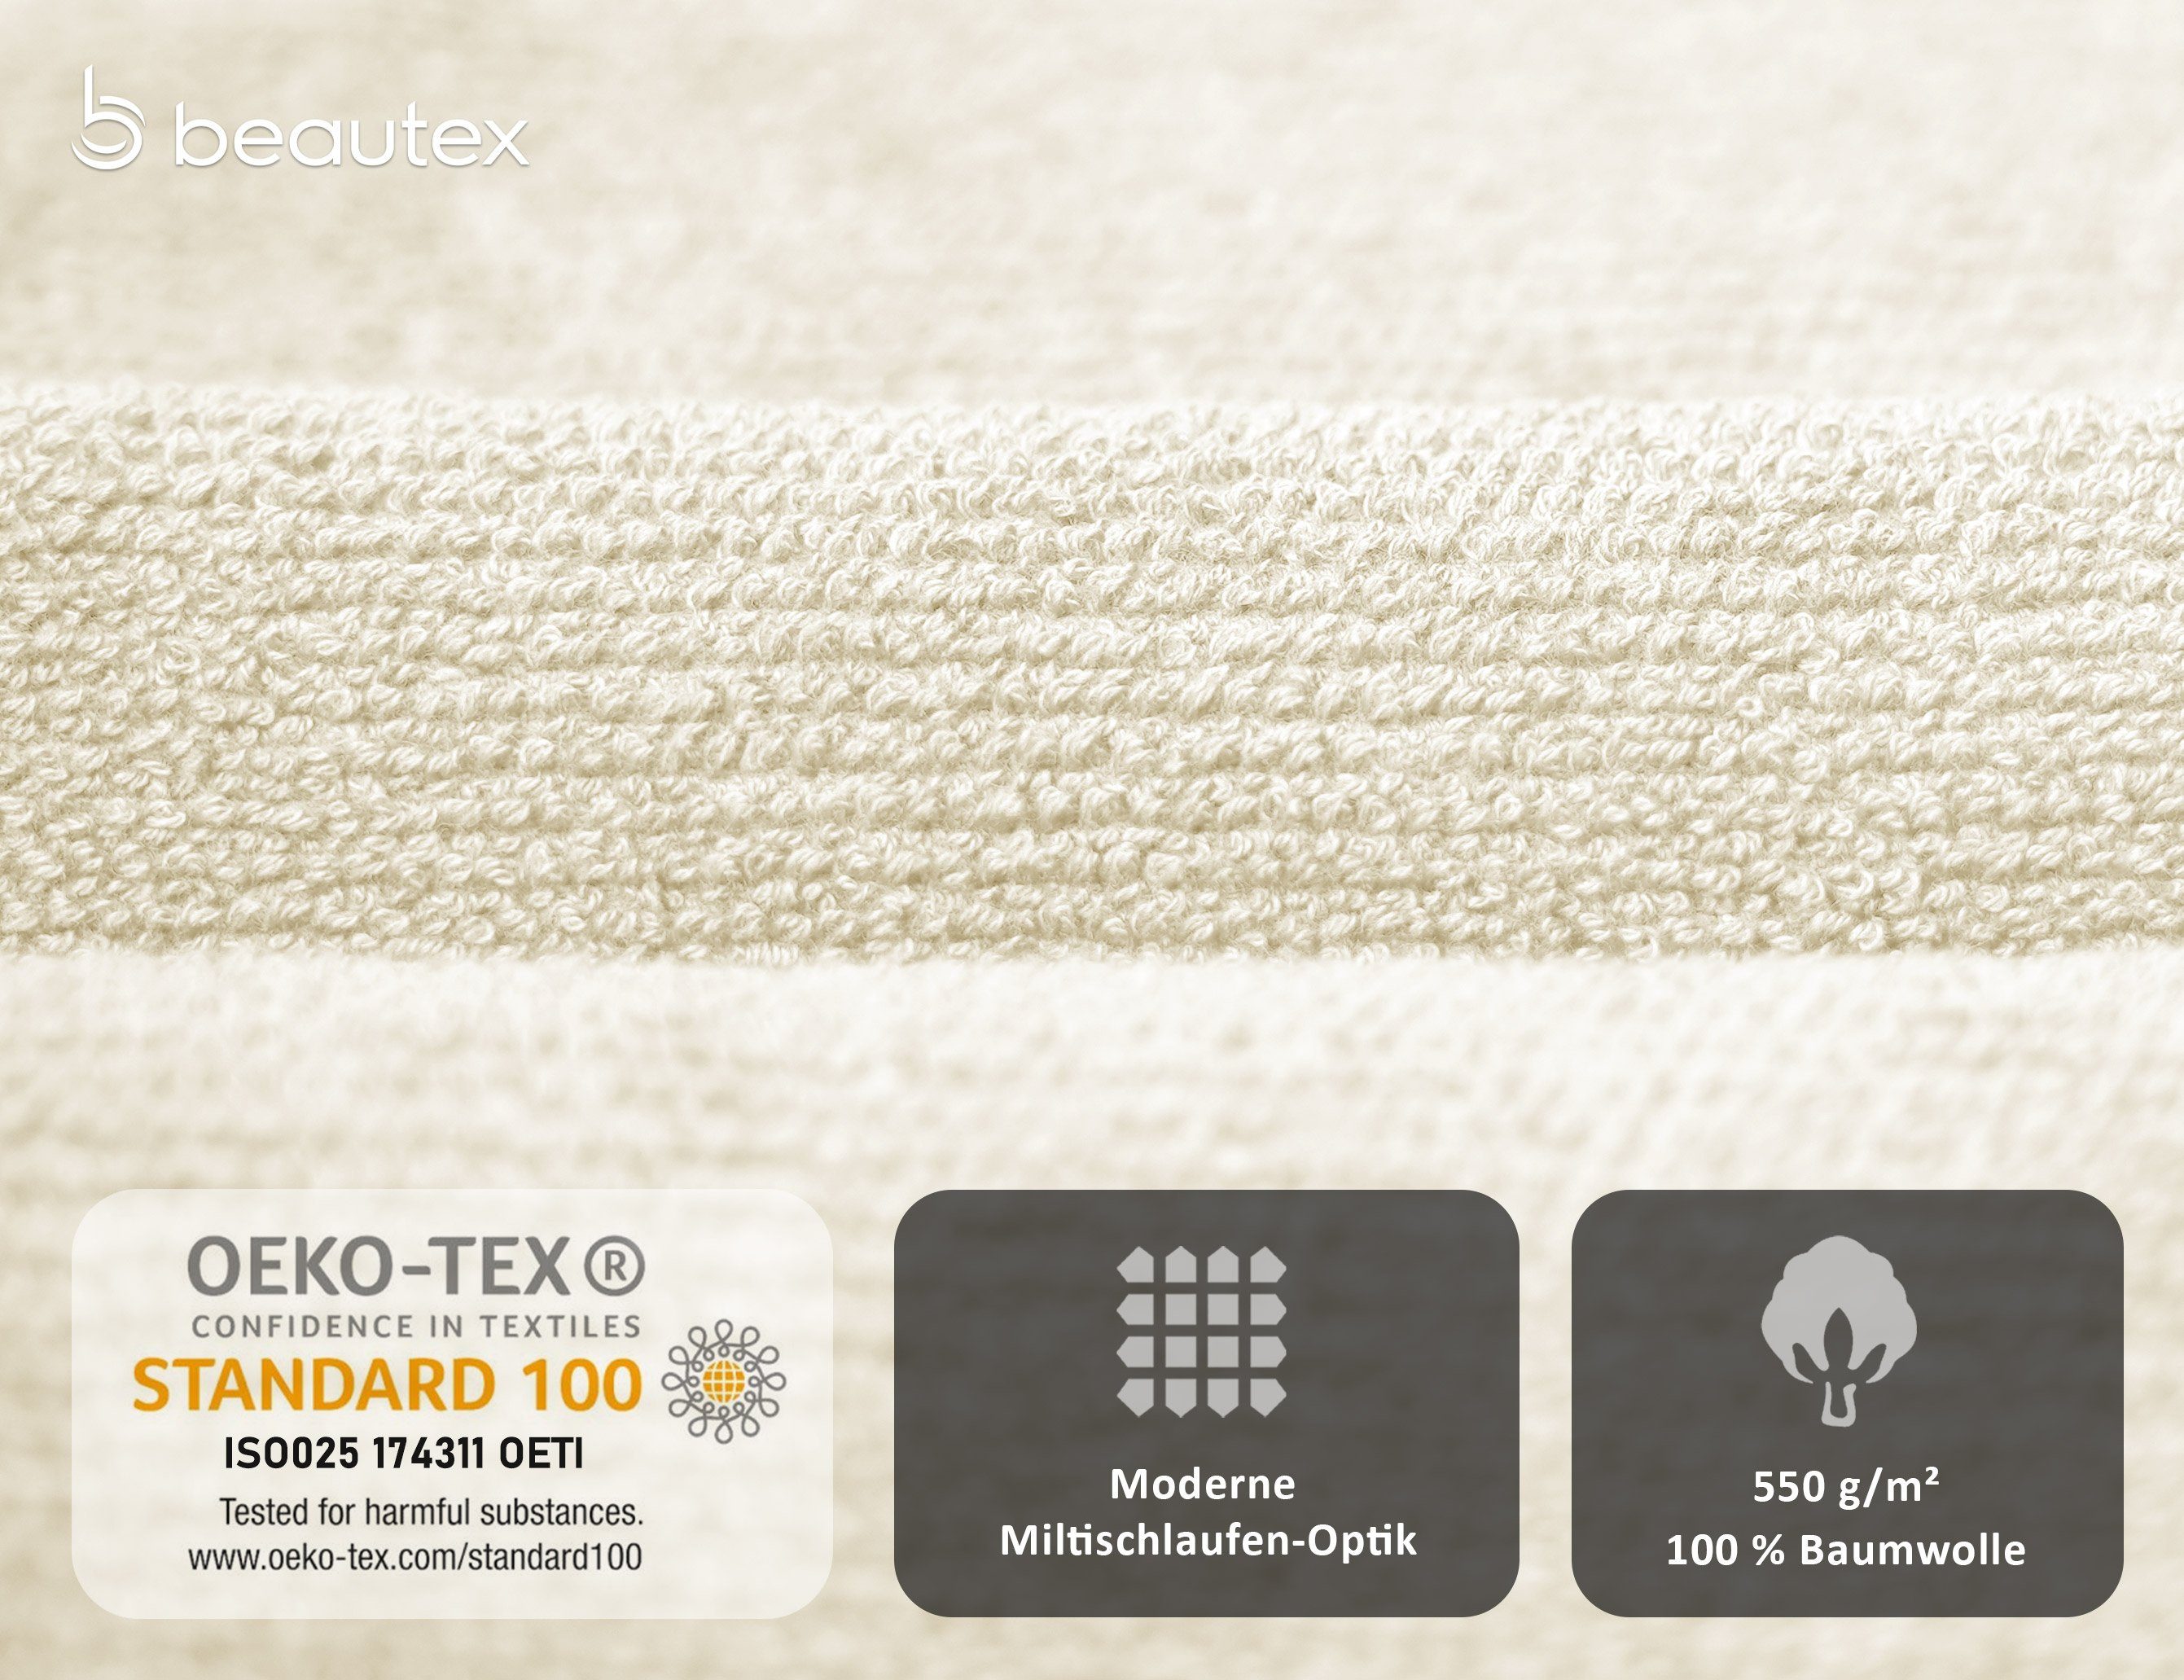 Baumwolle Handtuch Set, Beautex Frottier, 100% 550g/m) Made Set in aus Set Premium Handtuch Europe, Creme (Multischlaufen-Optik, Frottier